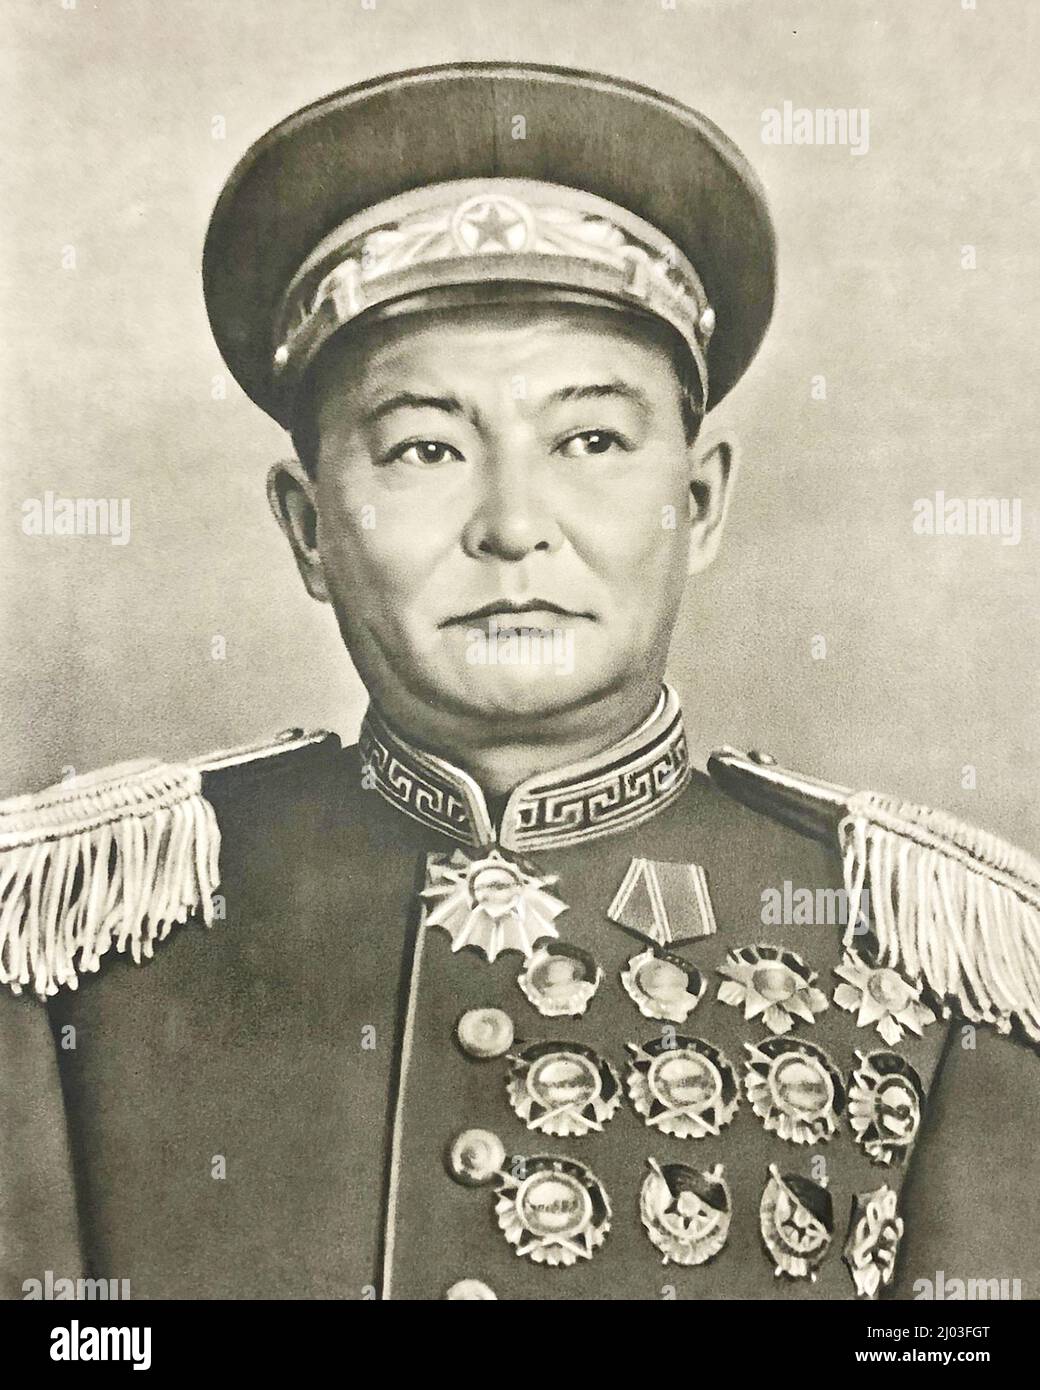 Maréchal Khorloogiin Choibalsan. Il a été le chef de la Mongolie (République populaire mongole) et le maréchal (commandant en chef général) de l'Armée populaire mongole de 1930s jusqu'à sa mort en 1952. Banque D'Images